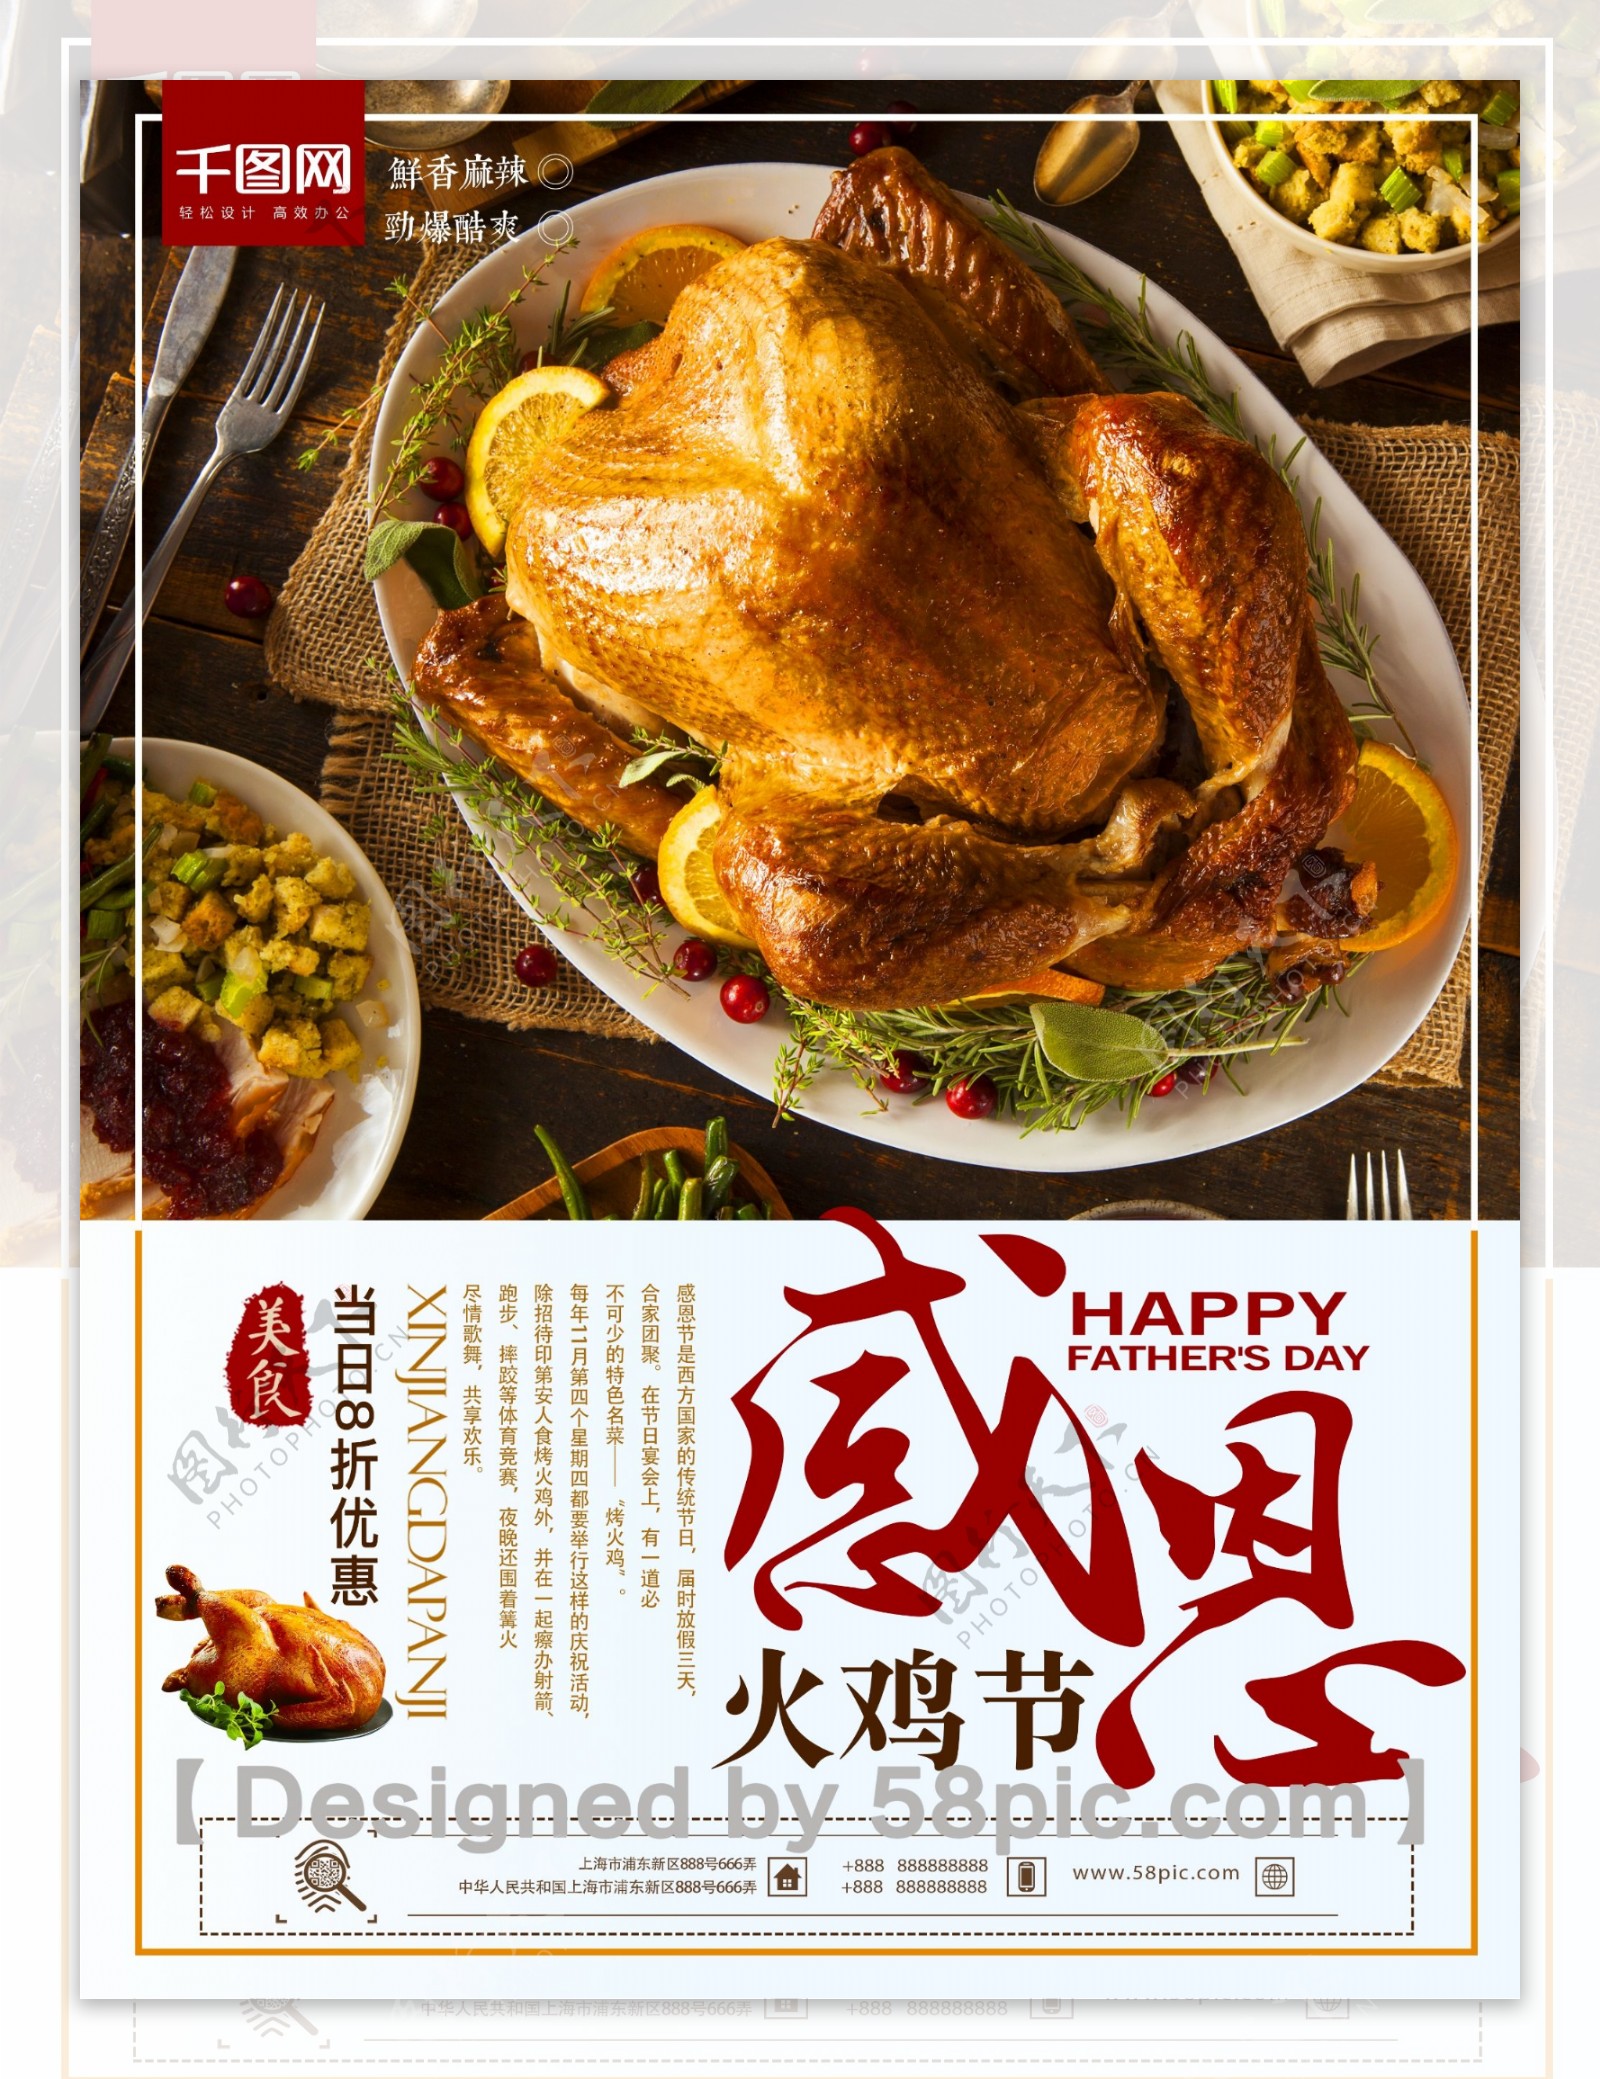 简约大气感恩节火鸡美食新品上市促销海报